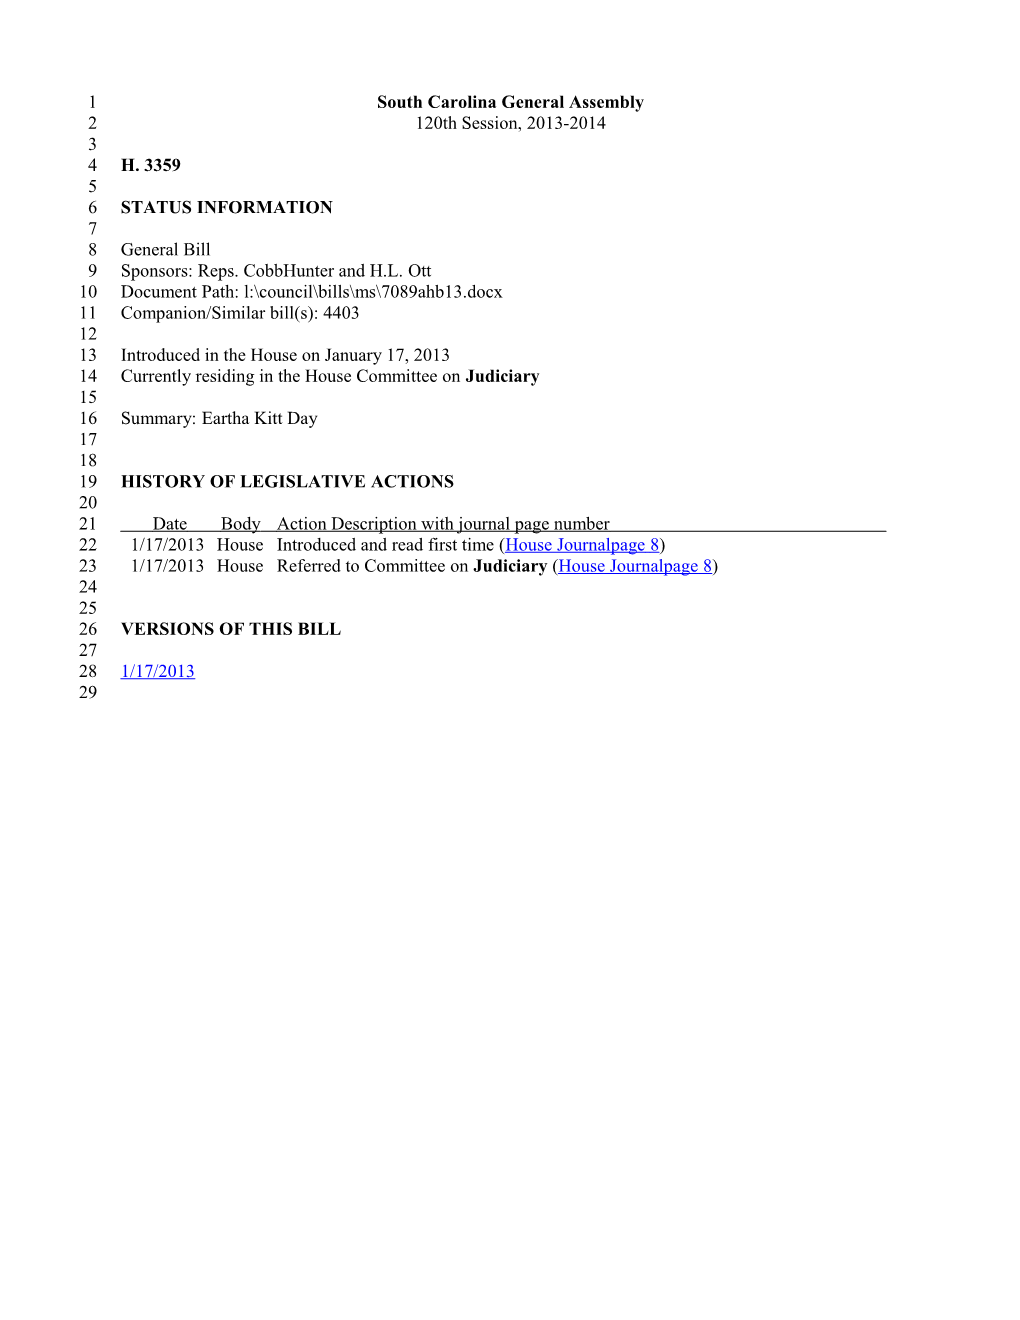 2013-2014 Bill 3359: Eartha Kitt Day - South Carolina Legislature Online